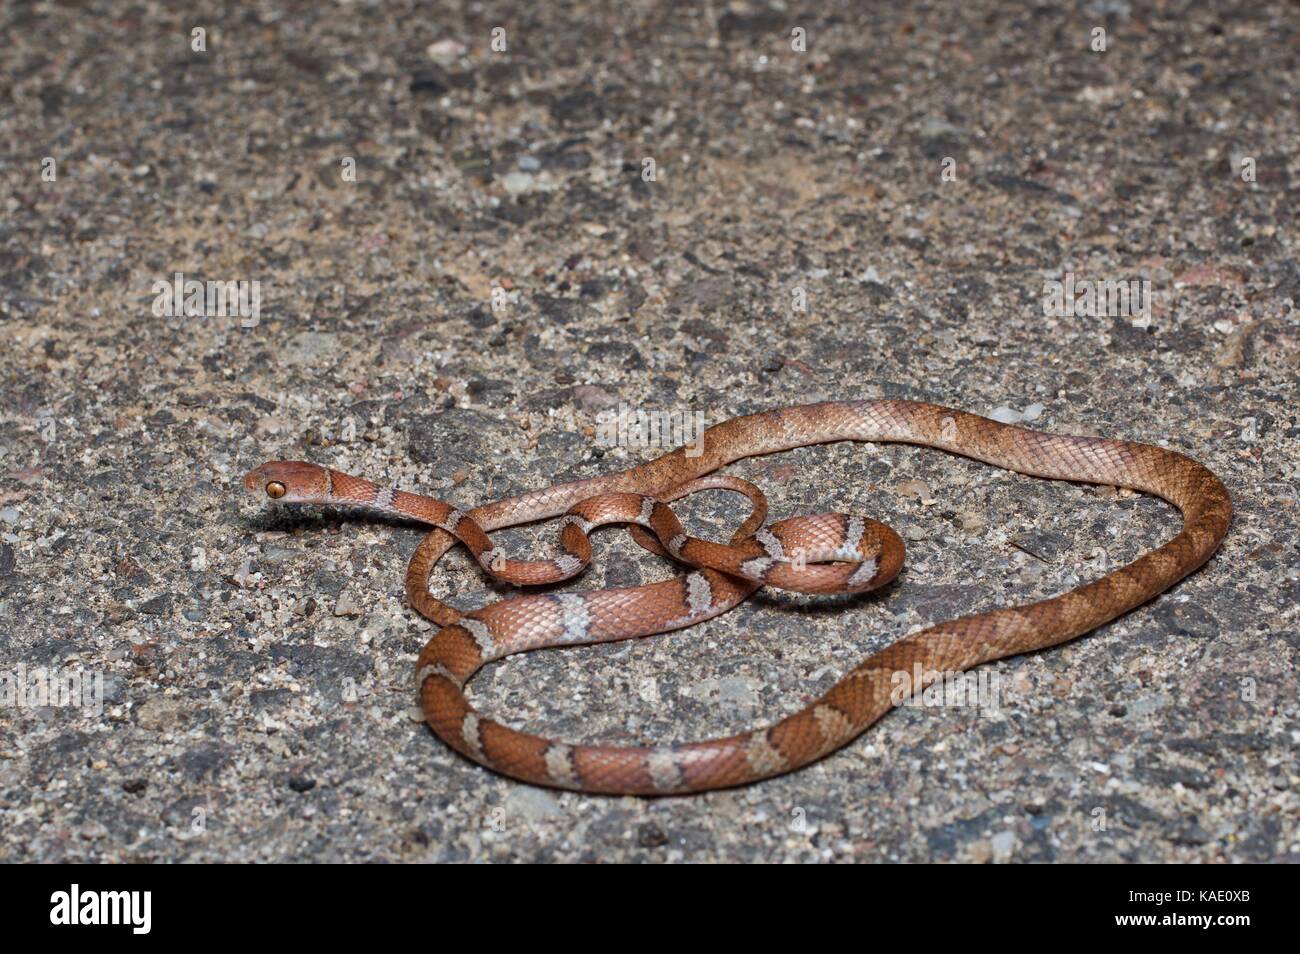 Un serpent d'arbre d'Amérique centrale (Imantodes gemmistatus) sur une route pavée la nuit près d'Álamos, Sonora Mexique Banque D'Images